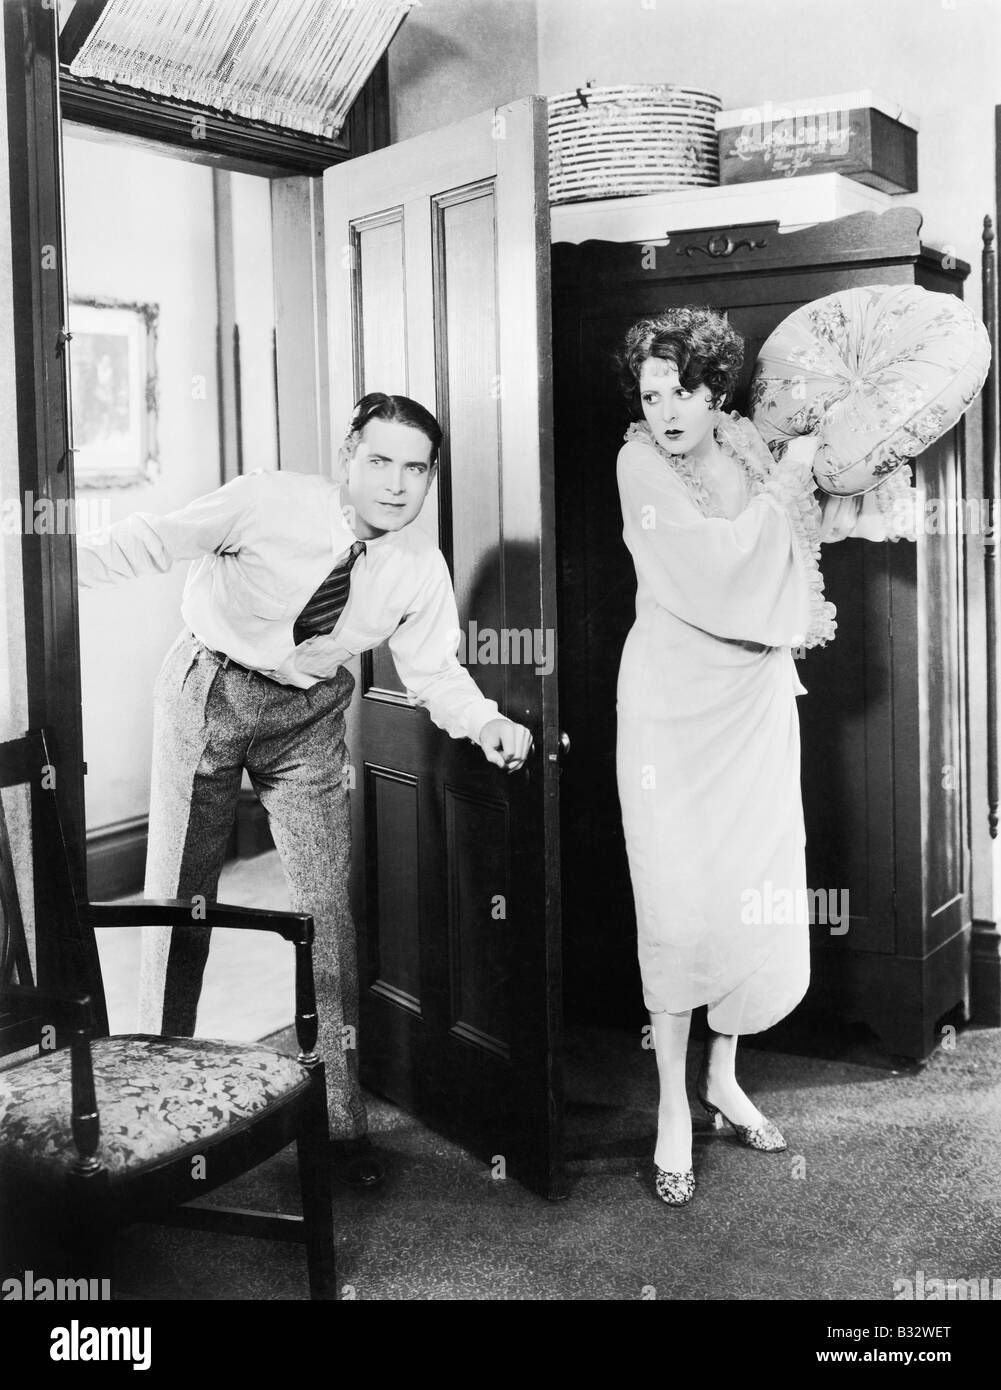 Femme debout derrière une porte en tentant de frapper un homme avec un oreiller Banque D'Images